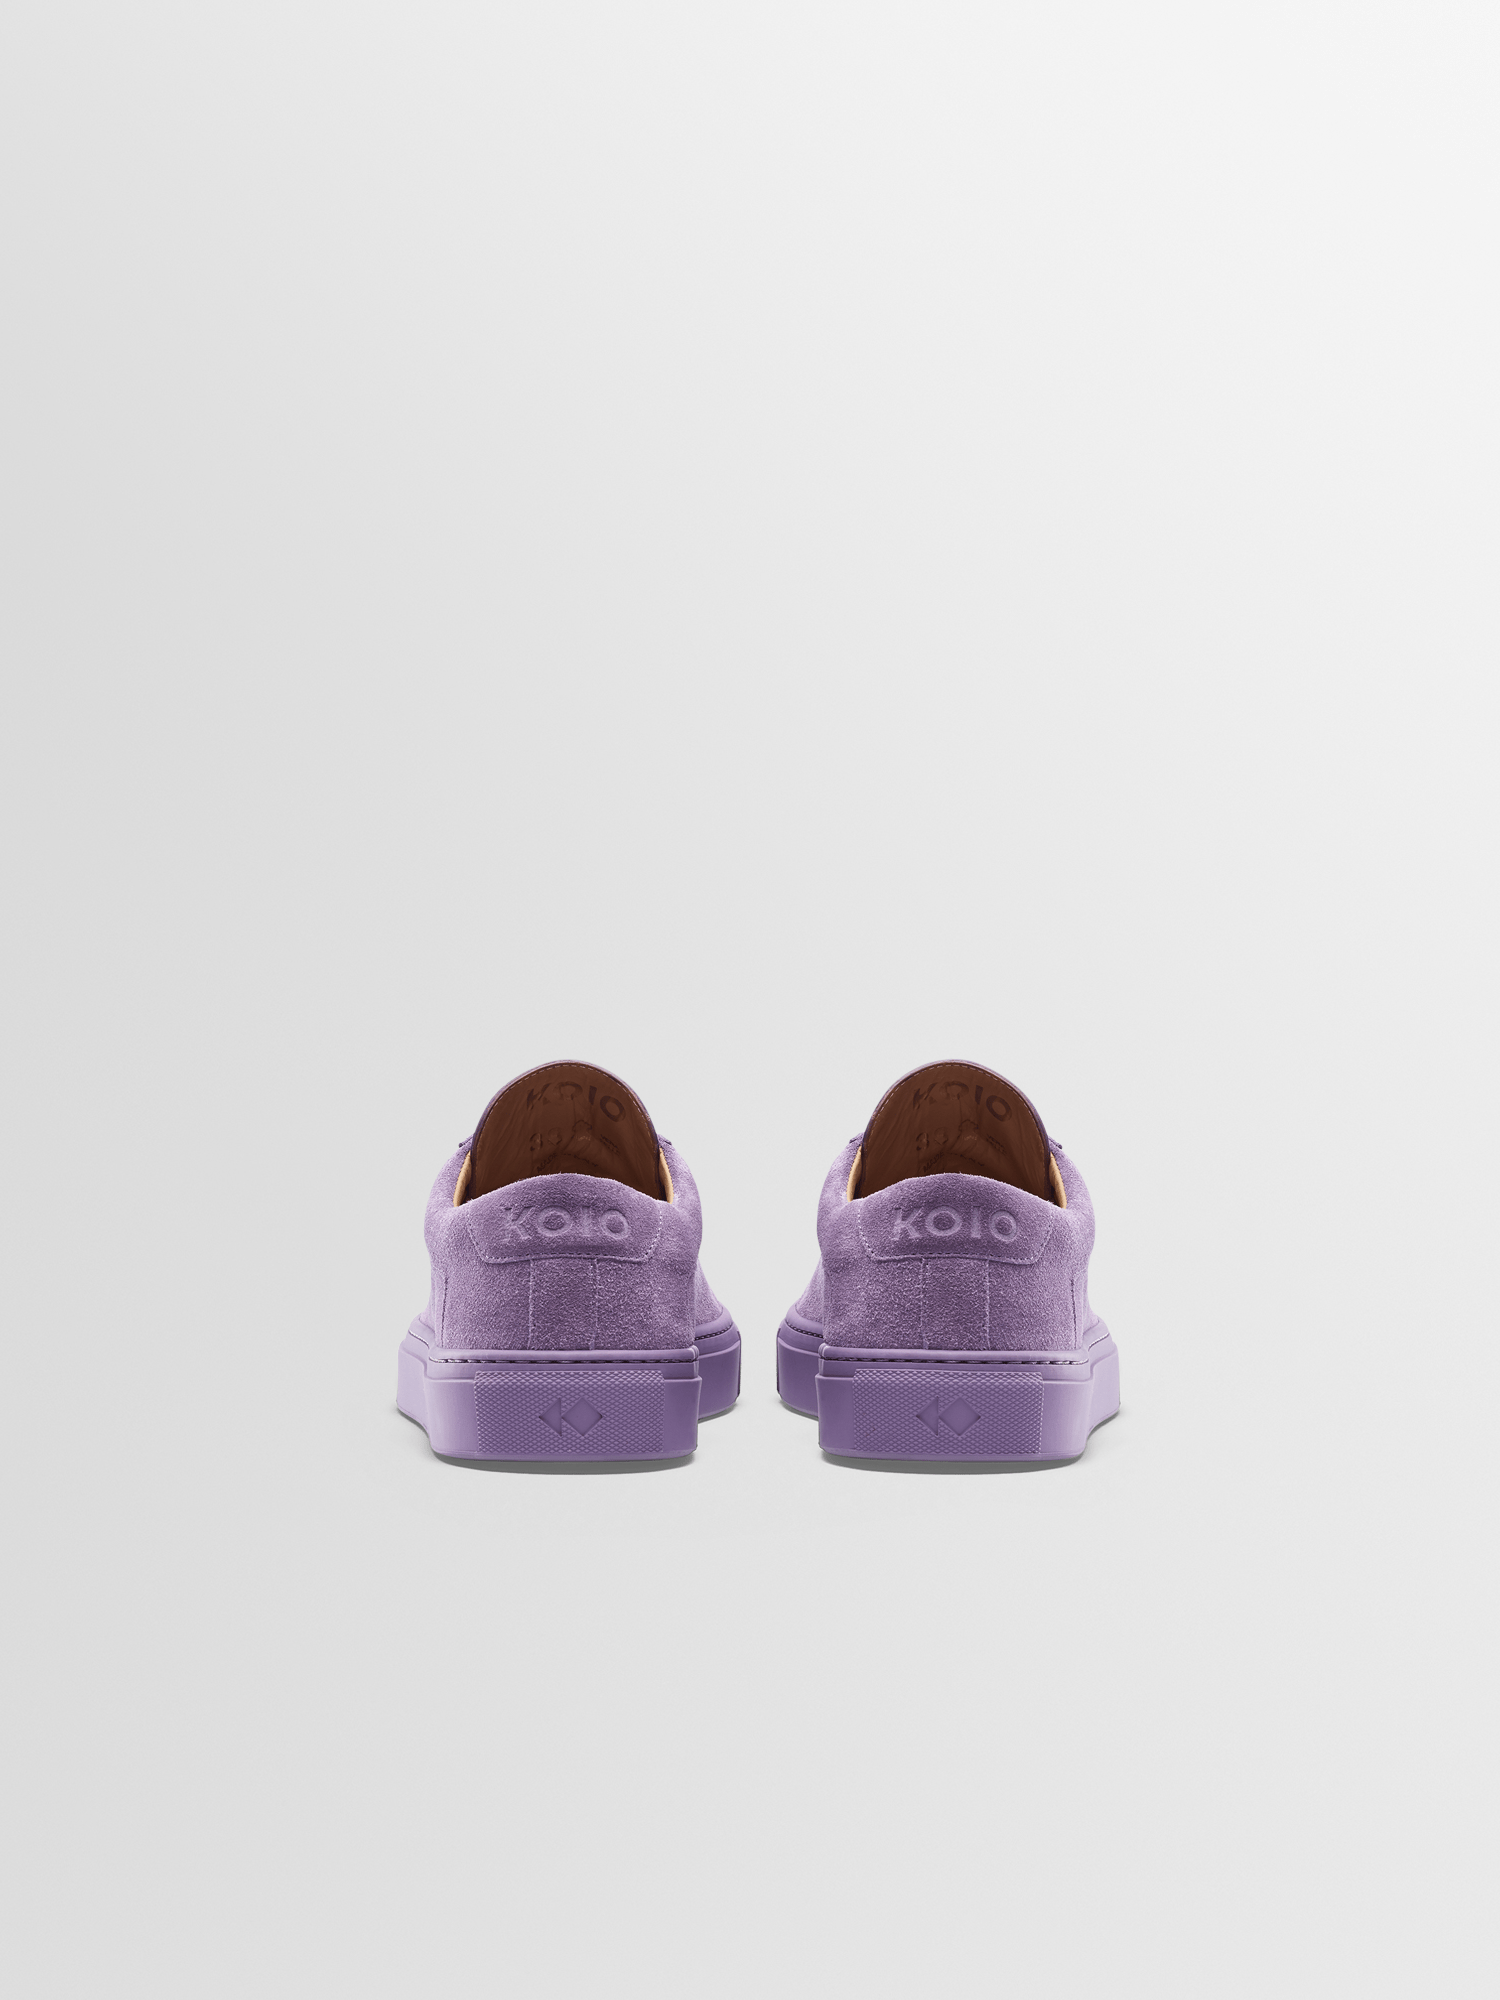 Men's Purple Suede Sneaker | Capri Lavender | Koio – KOIO